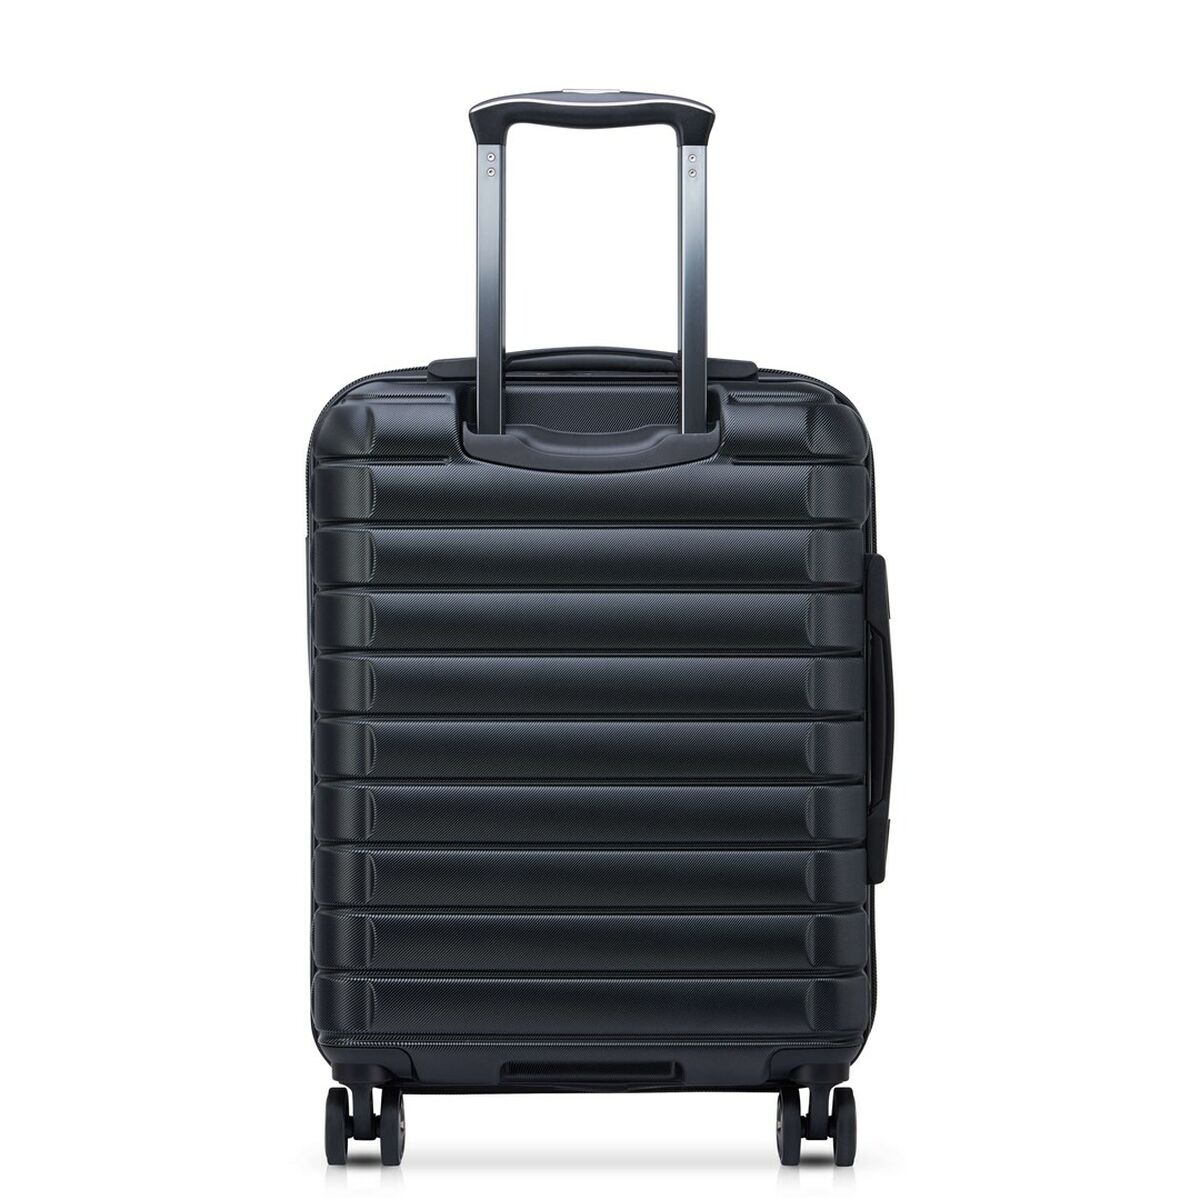 Koffer Delsey SHADOW 5.0 Schwarz 55 x 25 x 35 cm